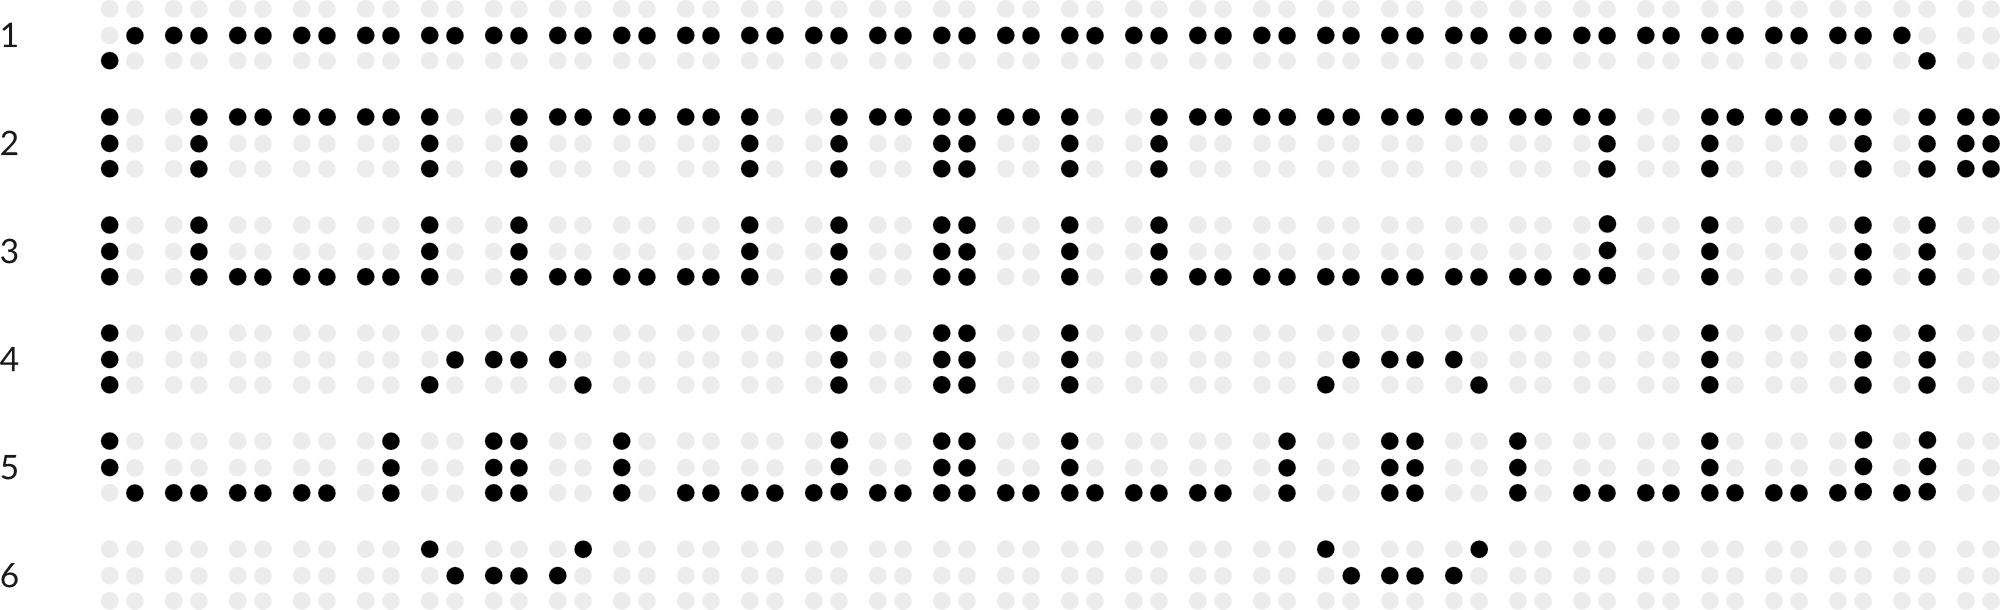 Braillebild mit Raster: Bus